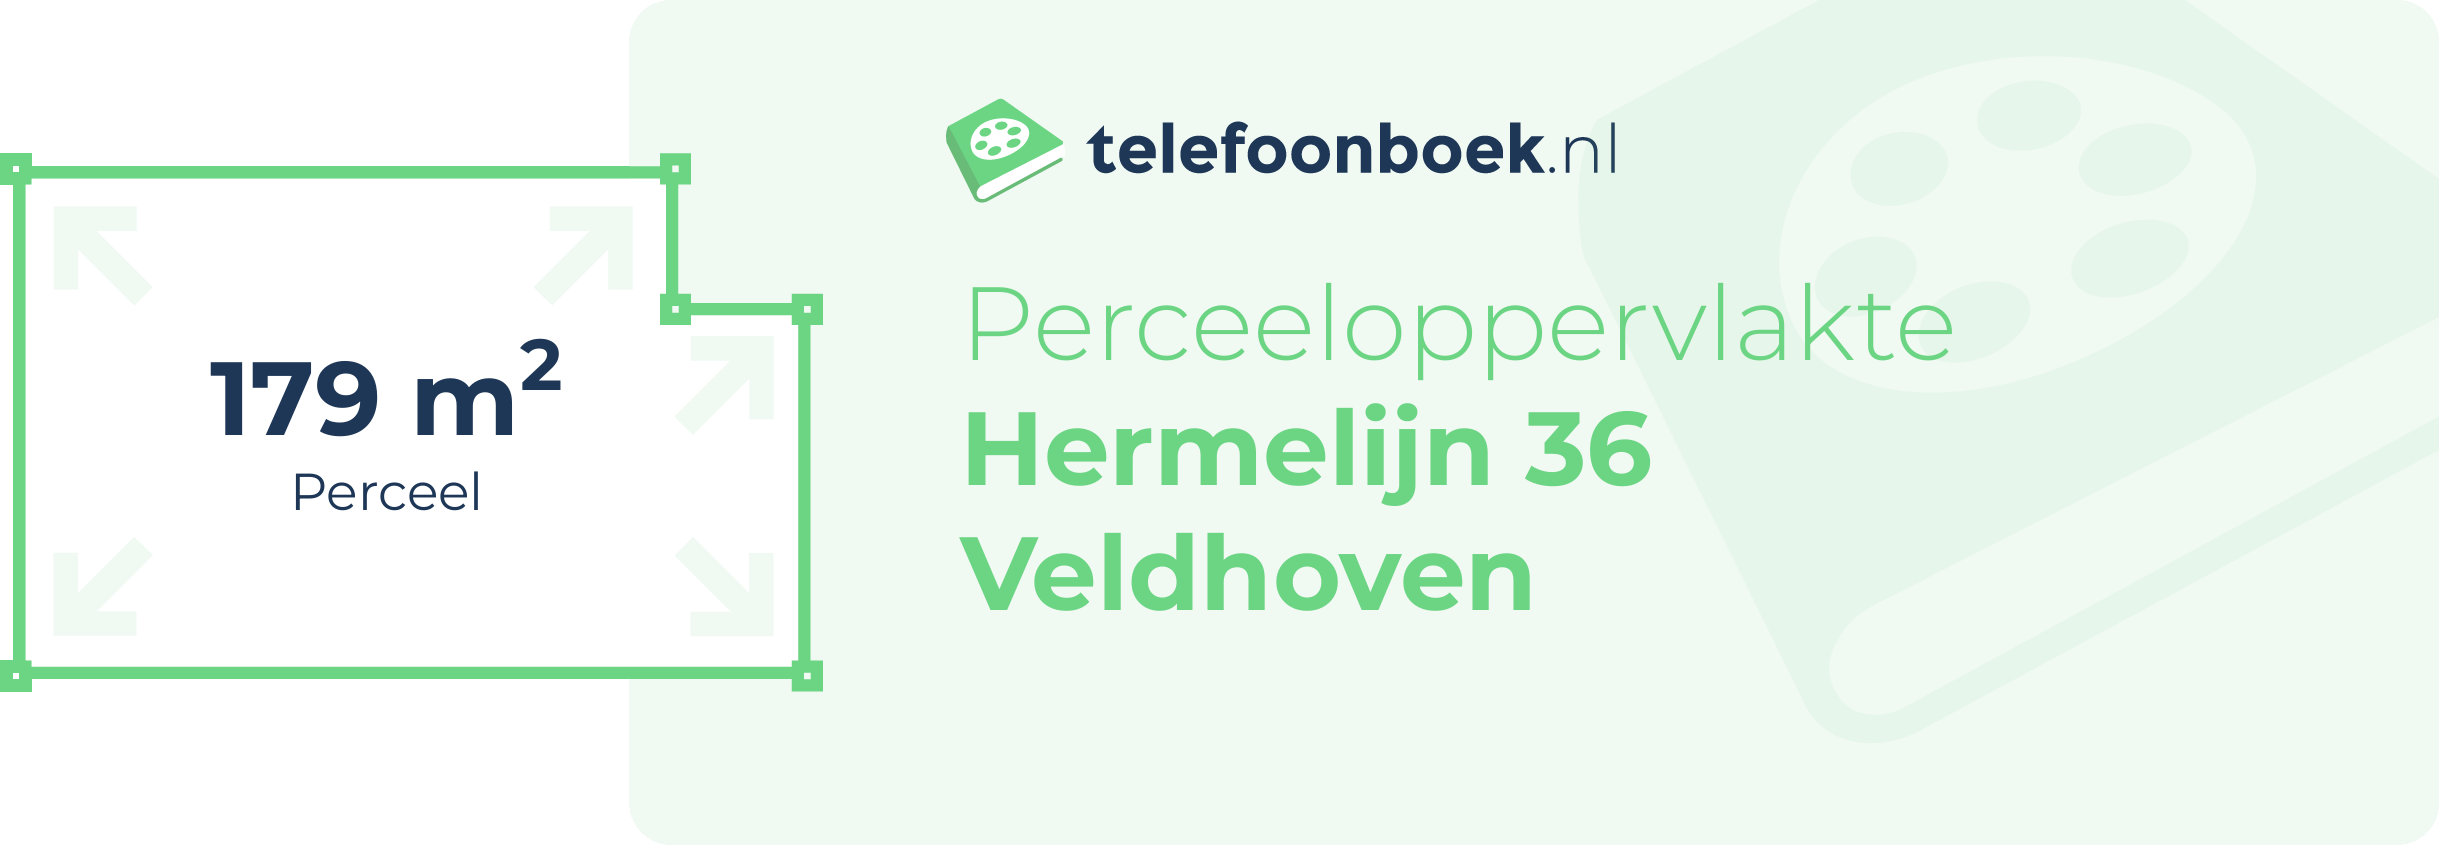 Perceeloppervlakte Hermelijn 36 Veldhoven